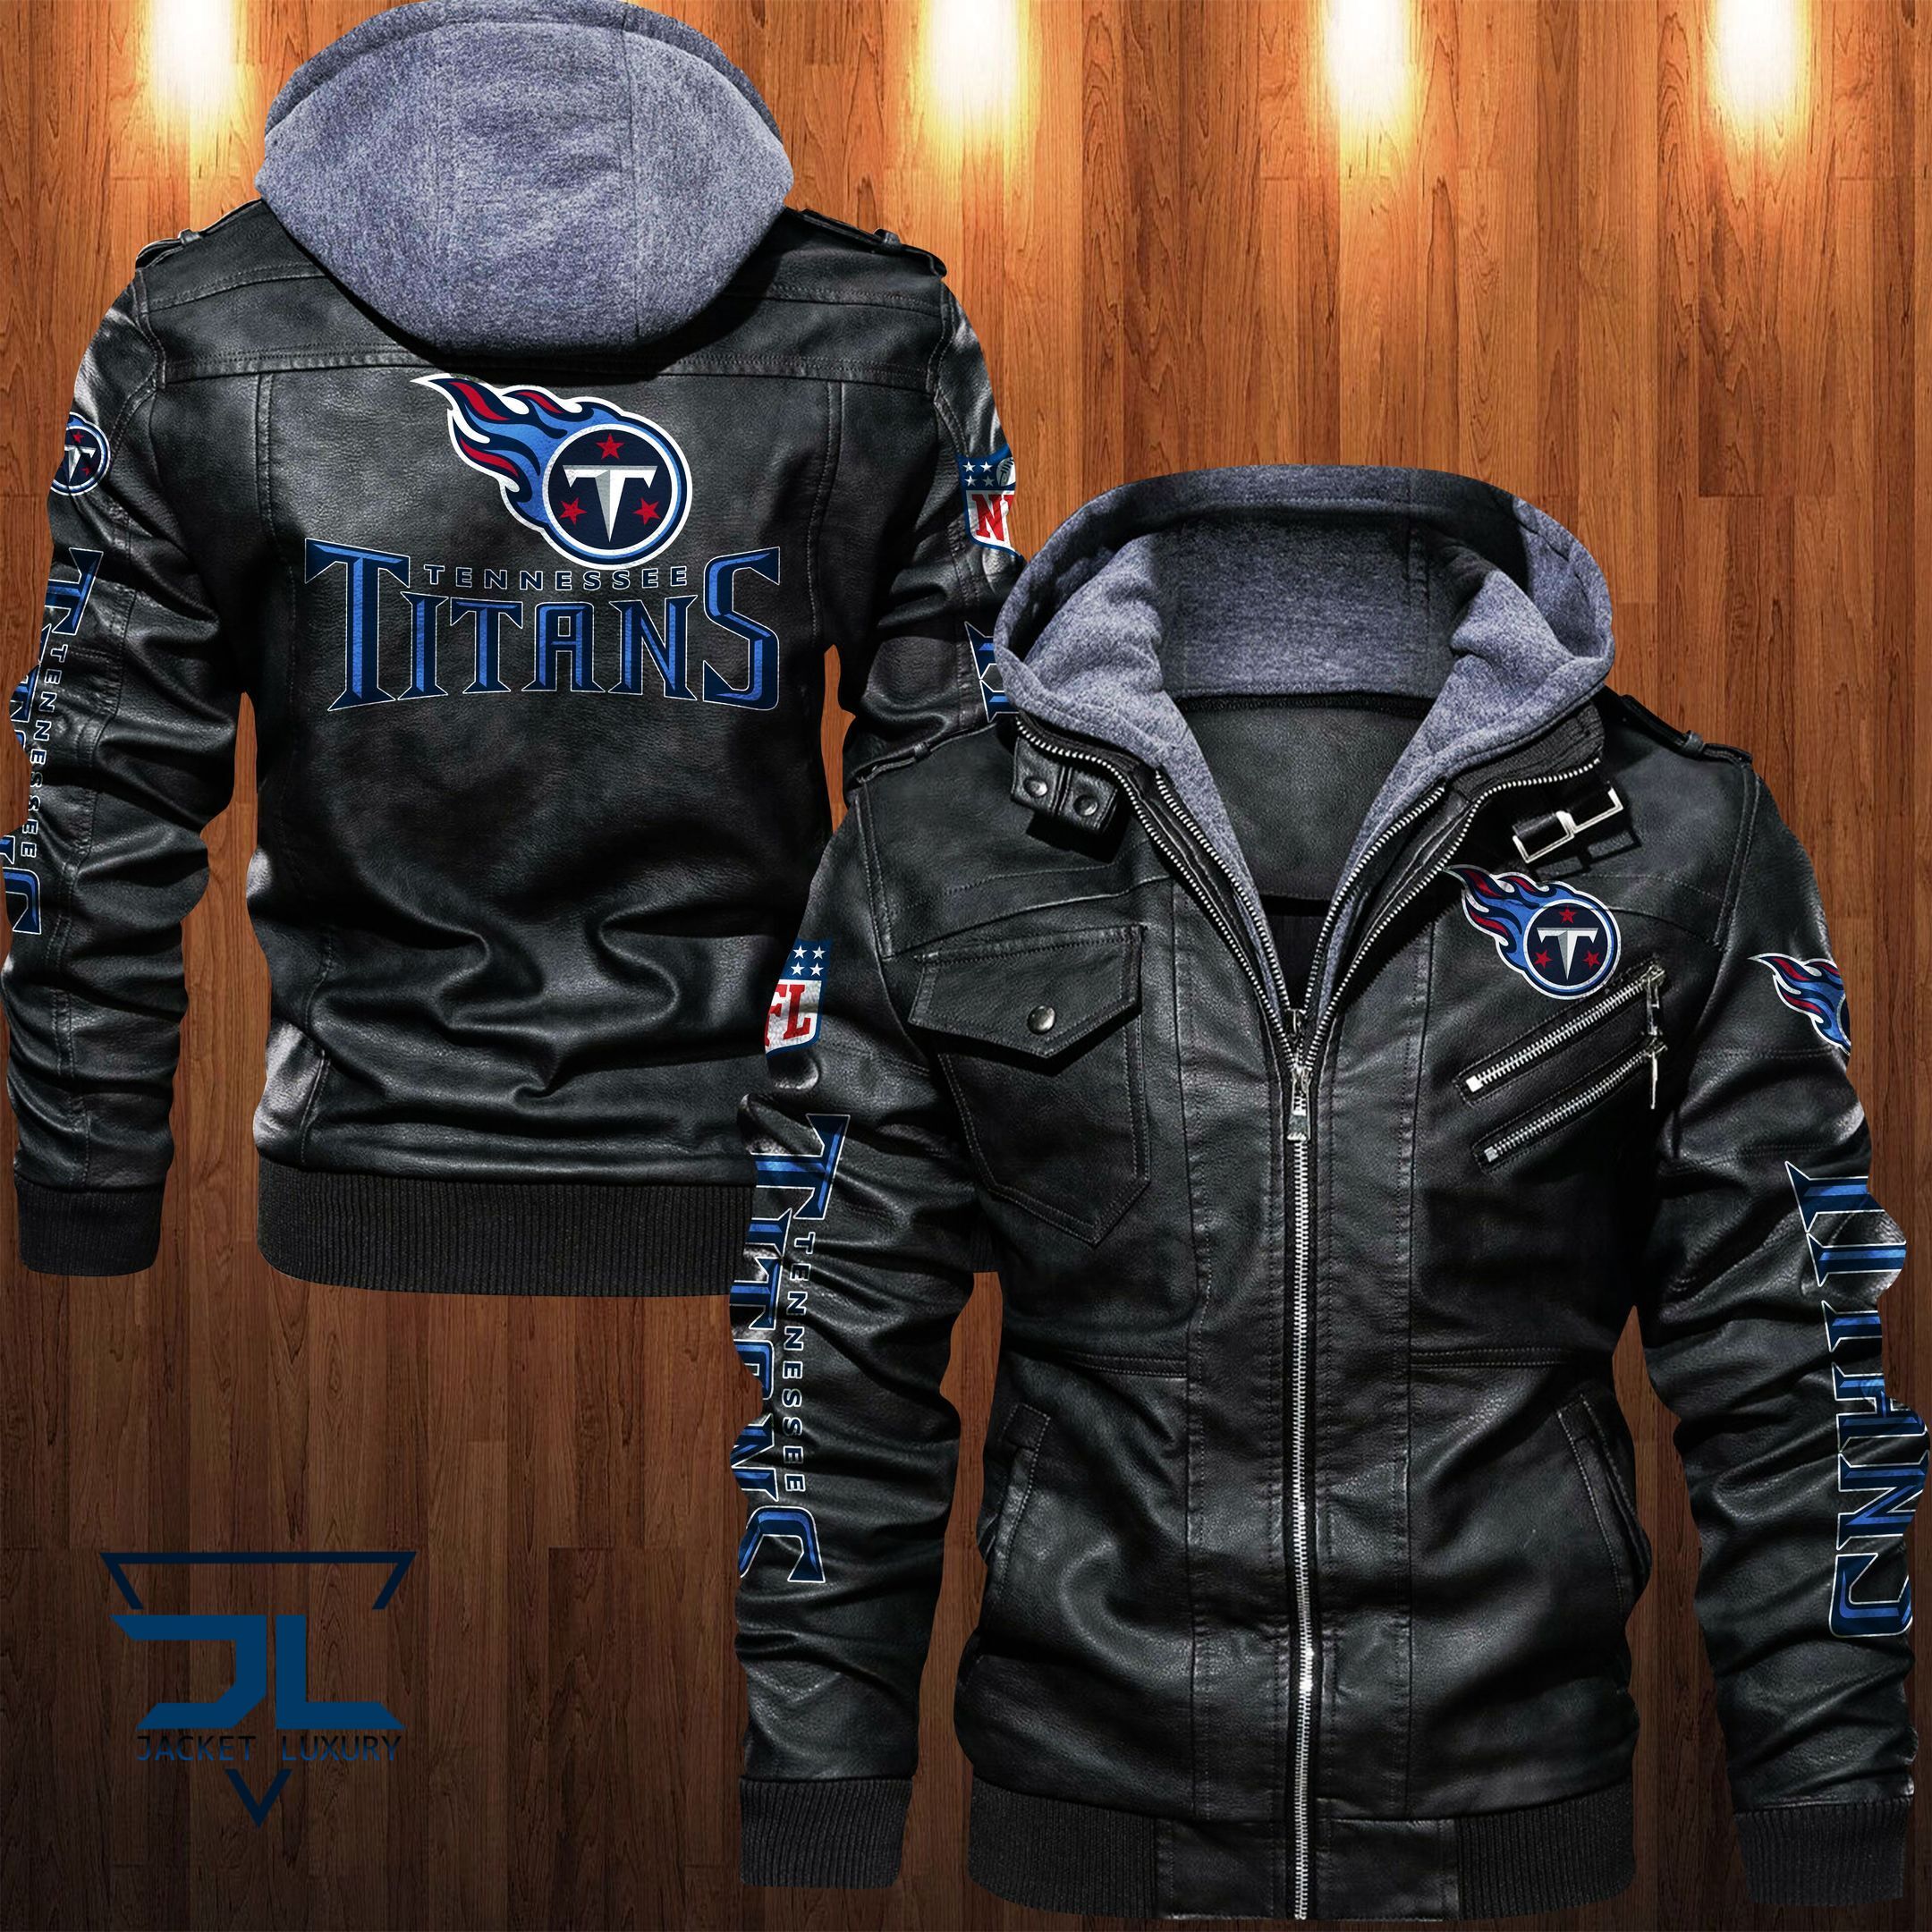 Get the best jackets under $100! 187